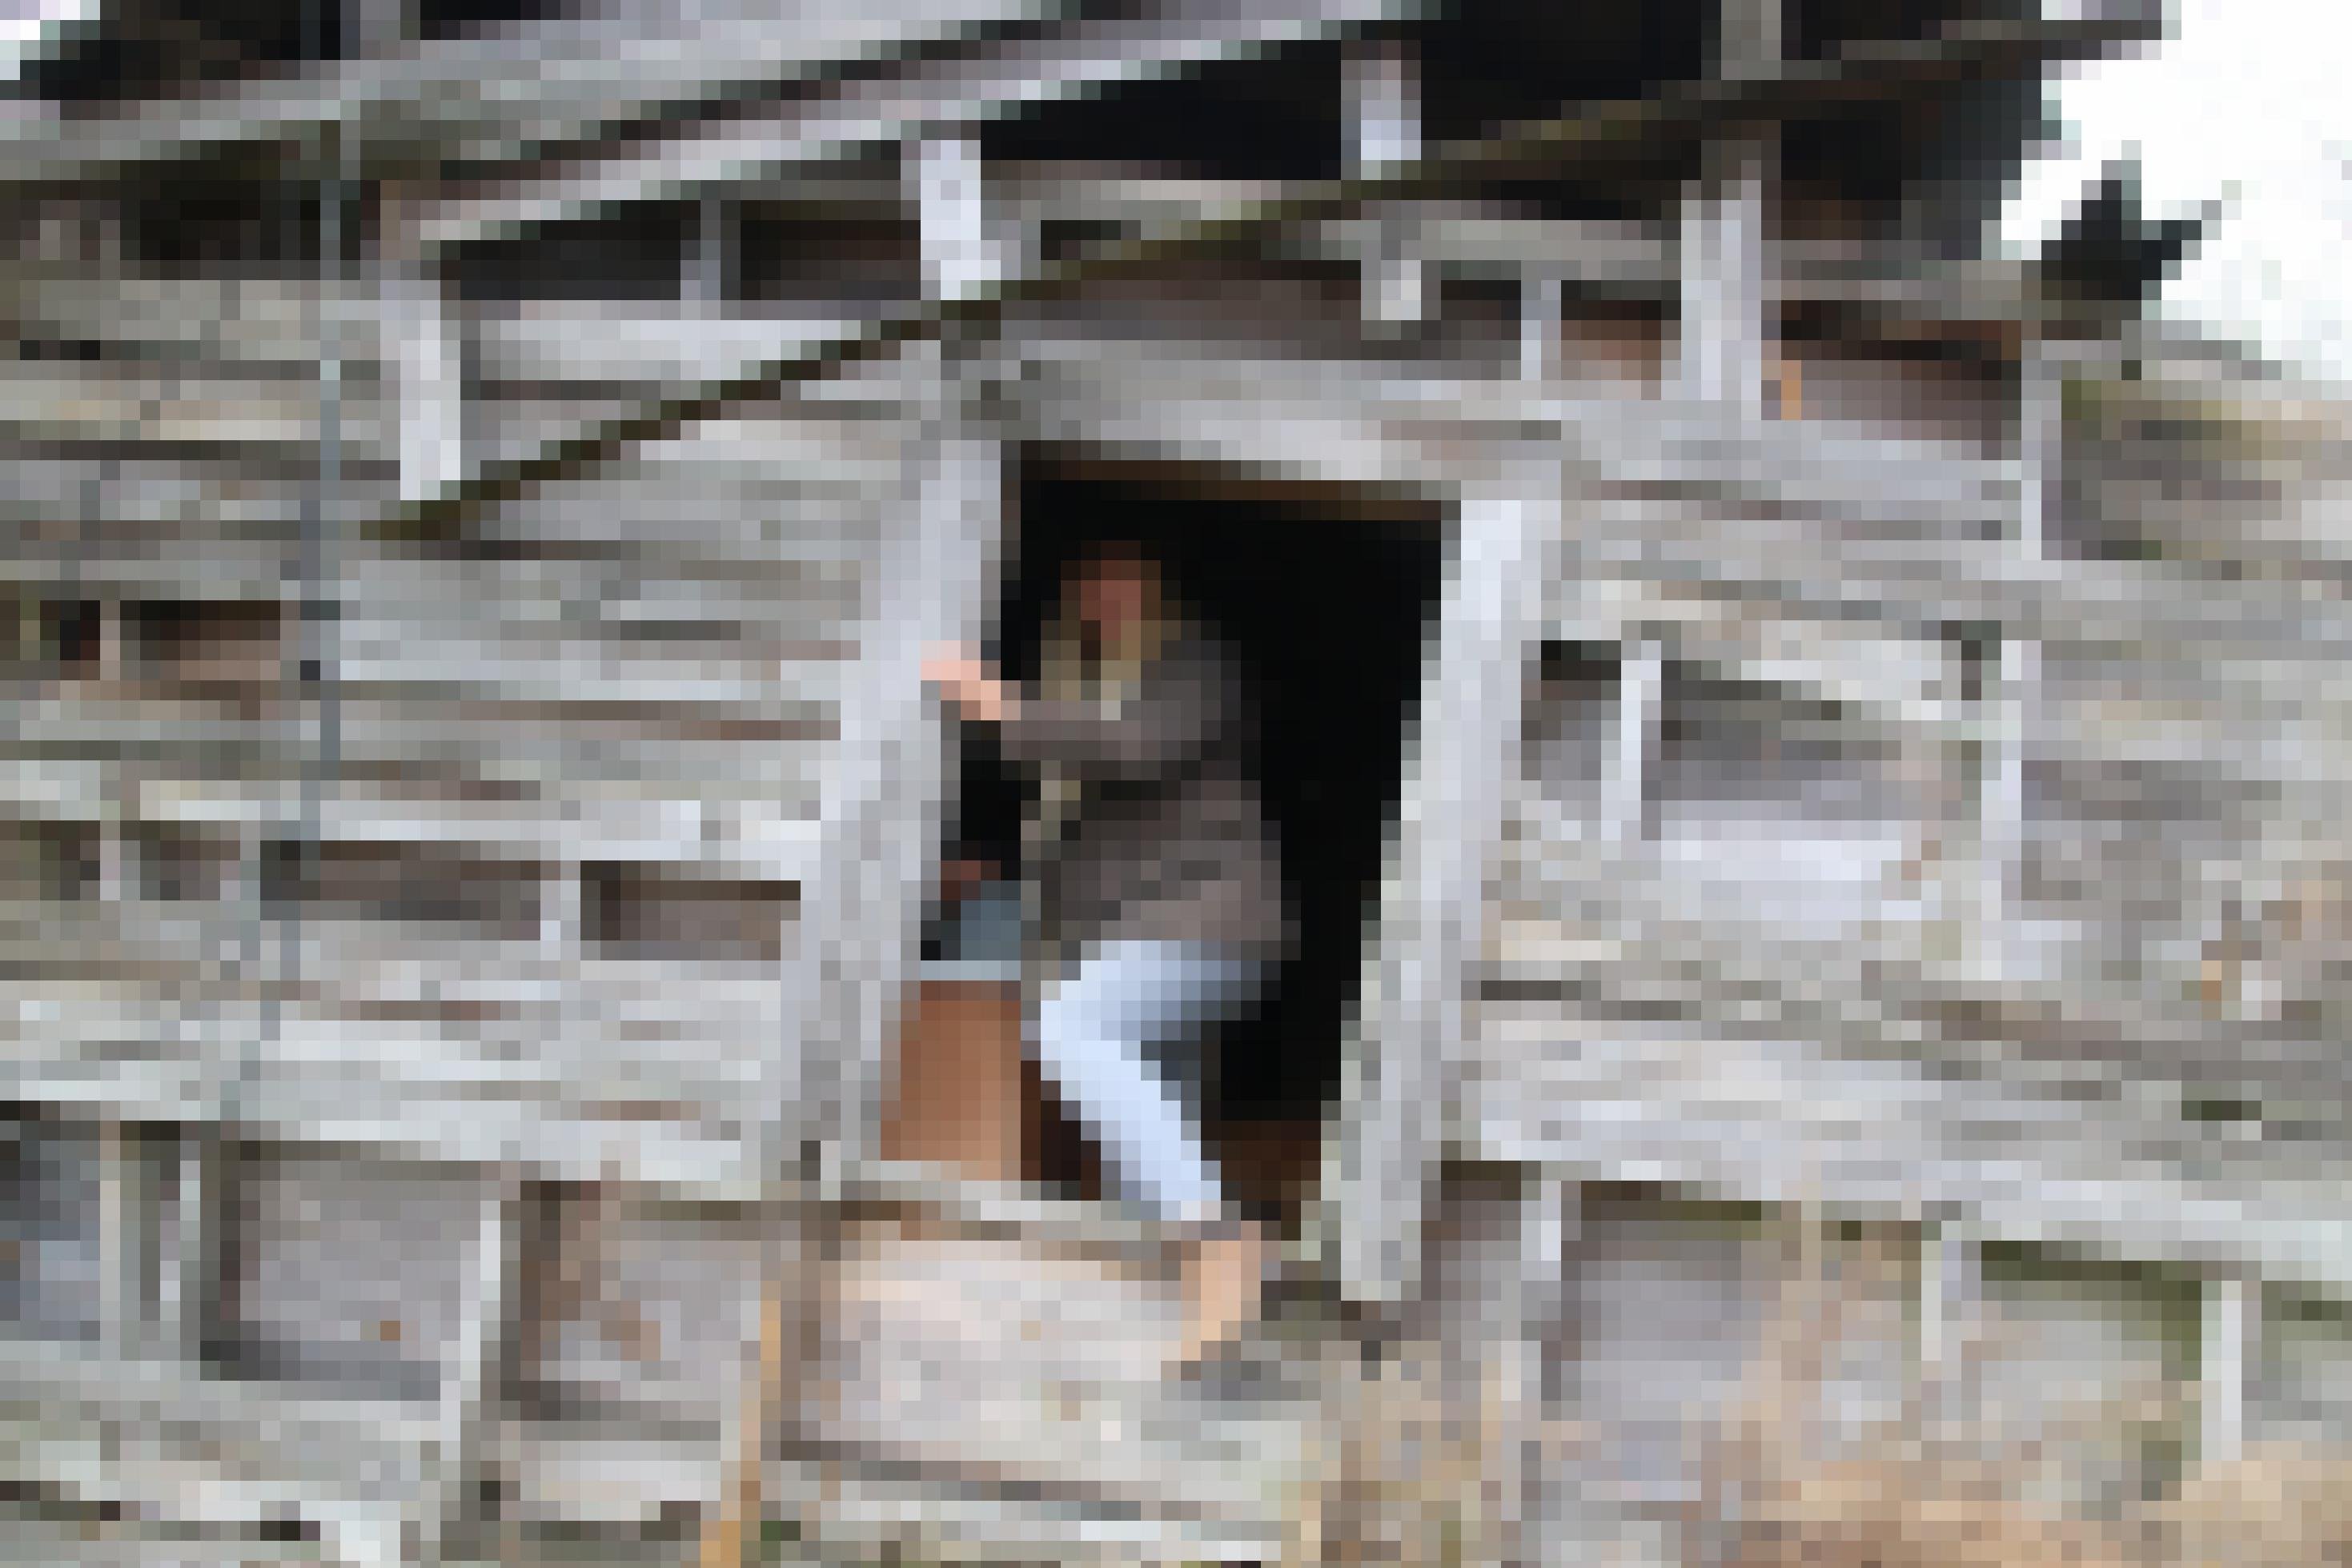 Stacie Marshall klettert durch den Eingang einer verfallenen Holzhütte